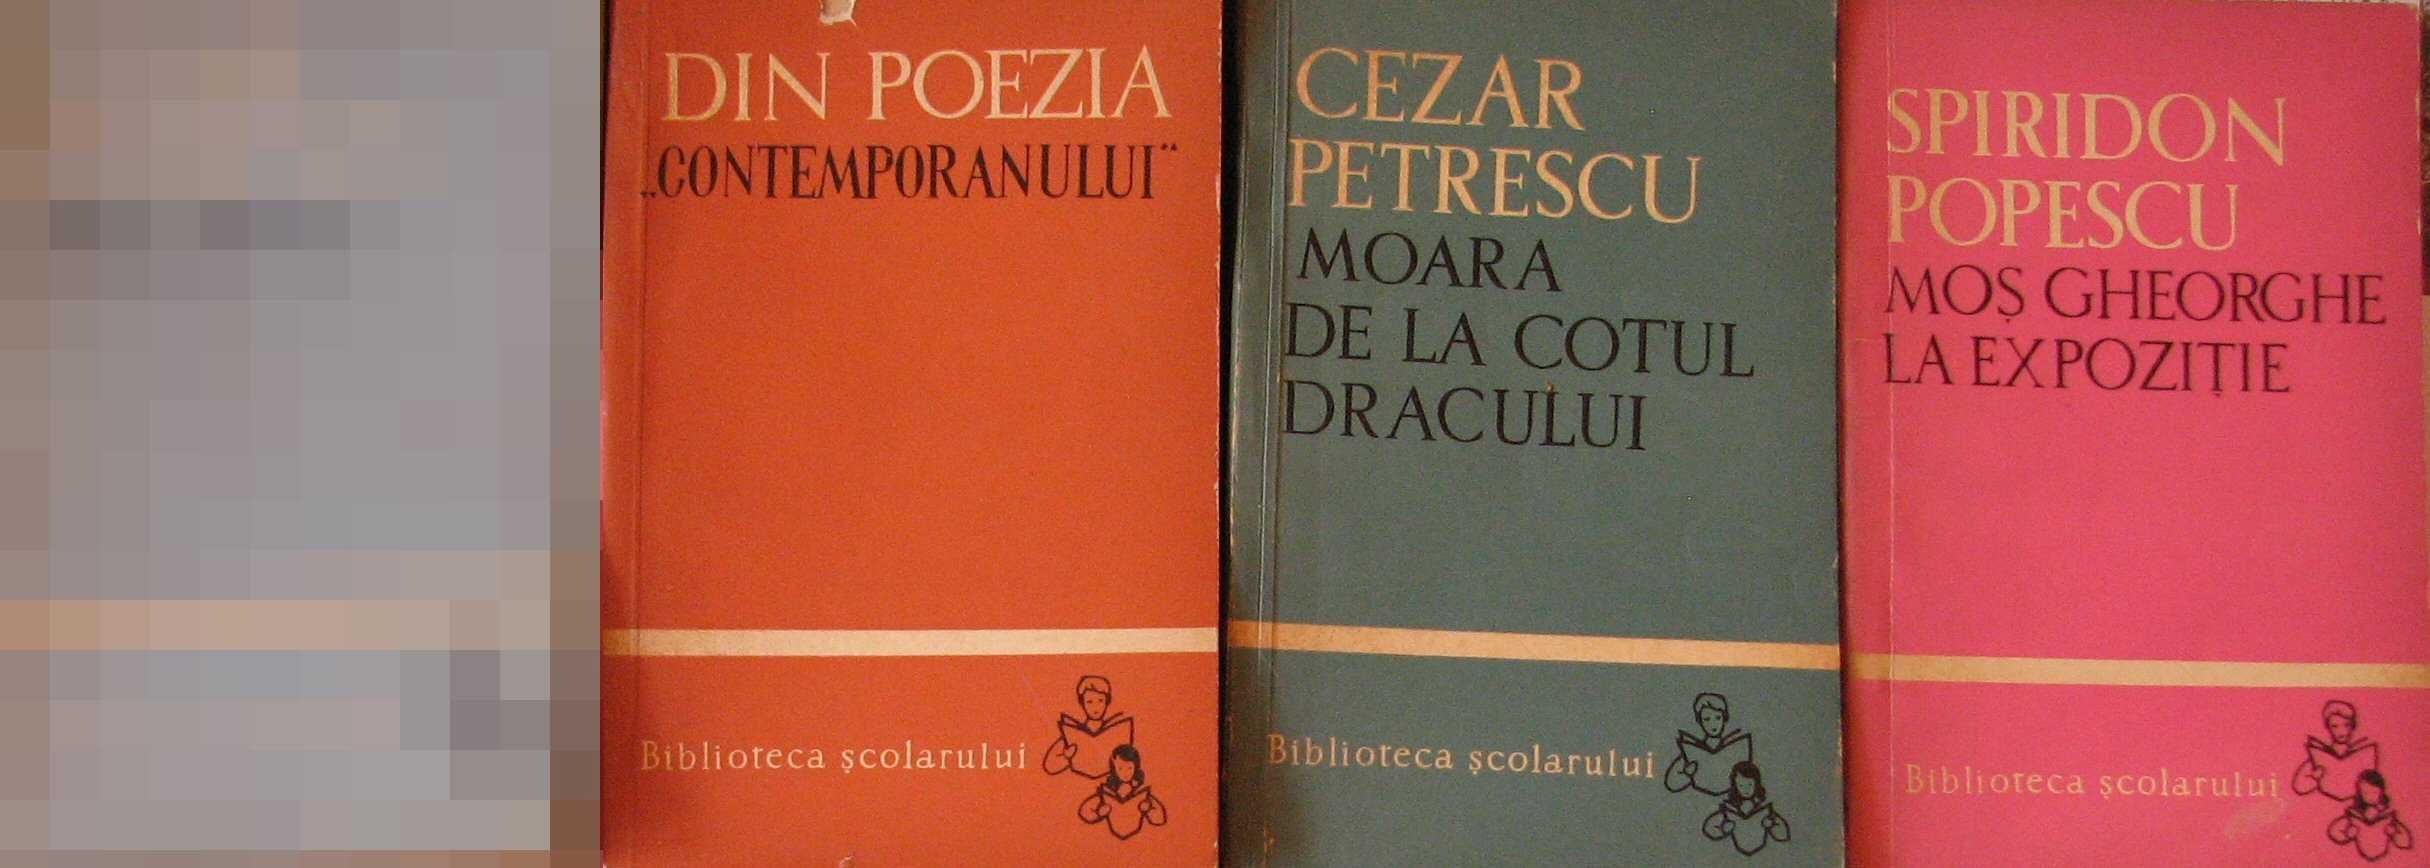 Carti 05: Cezar Petrescu, Spiridon Popescu, Poezie